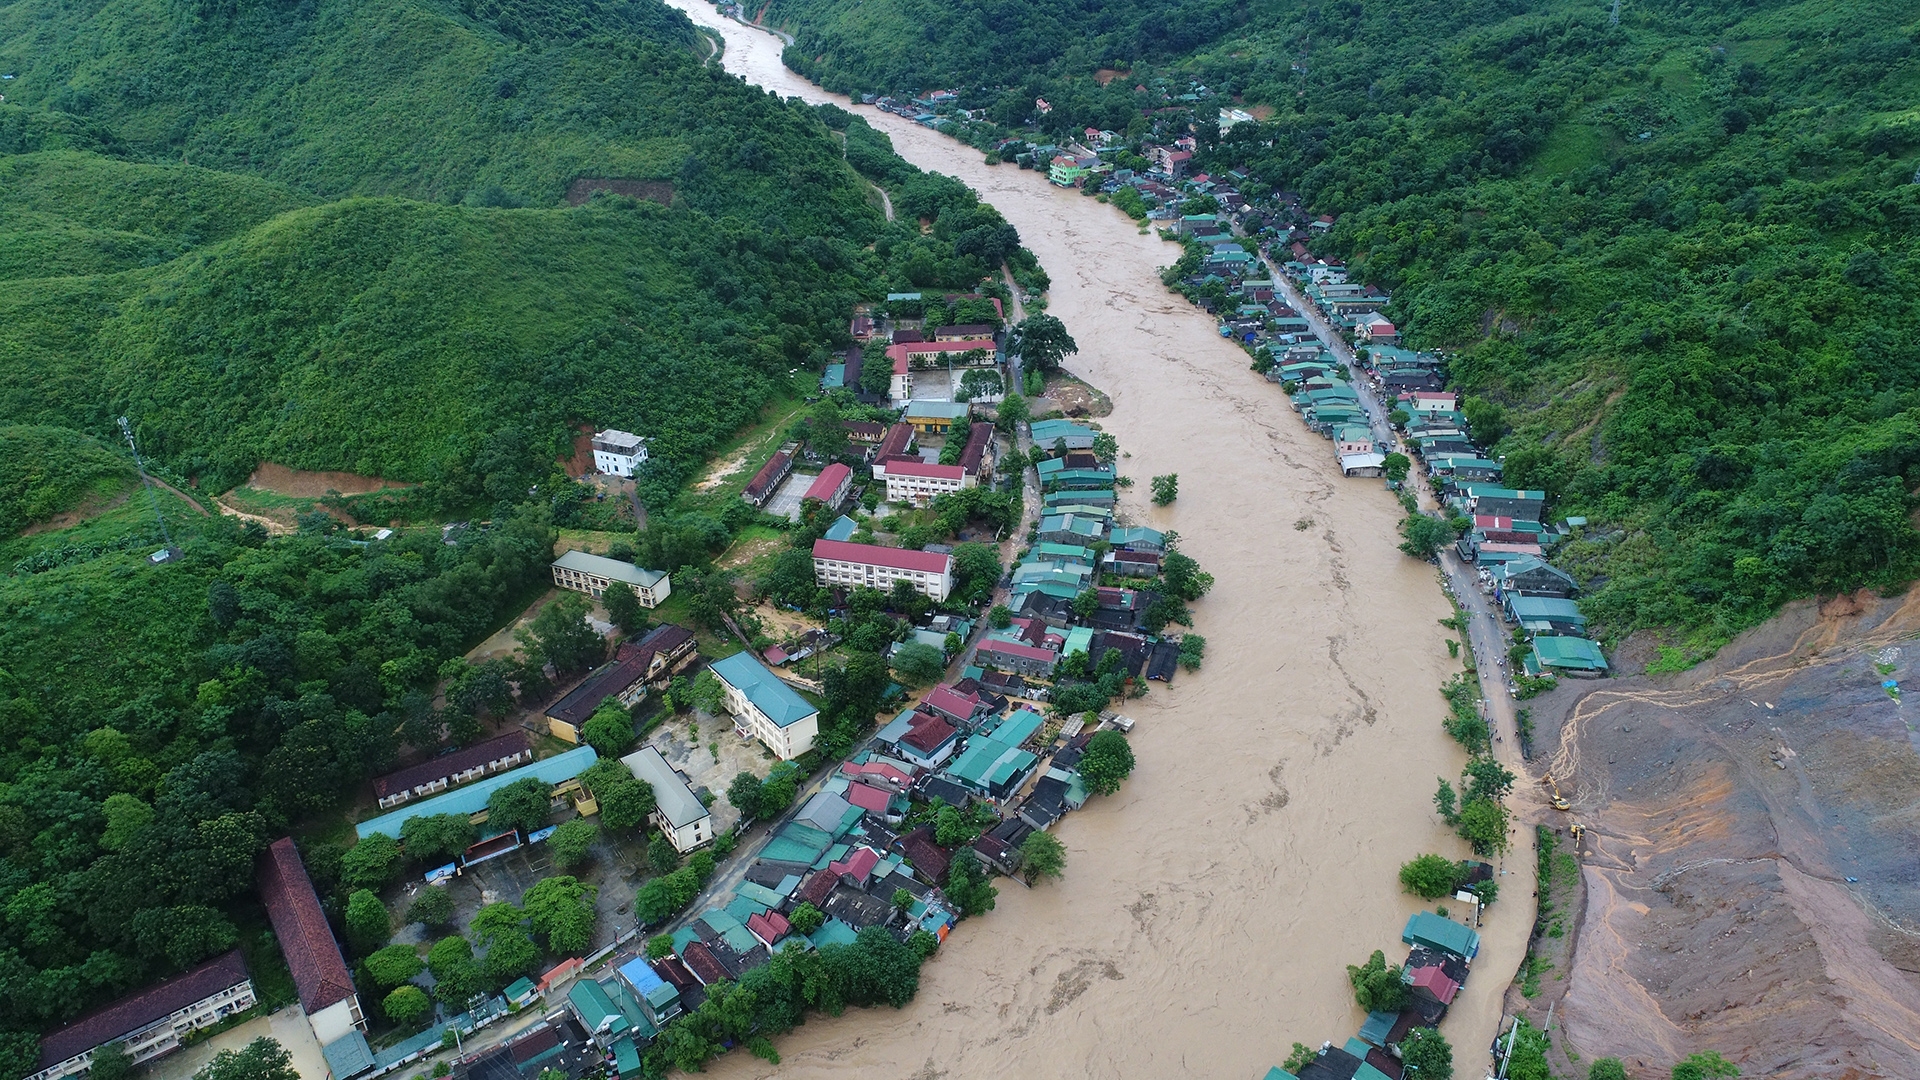 Mùa mưa bão năm 2018 khiến huyện Kỳ Sơn chìm trong lũ. Thị trấn Mường Xén và nhiều xã khác bị ngập sâu vì nước sông Nậm Mộ lên cao. Ảnh: Duy Khánh